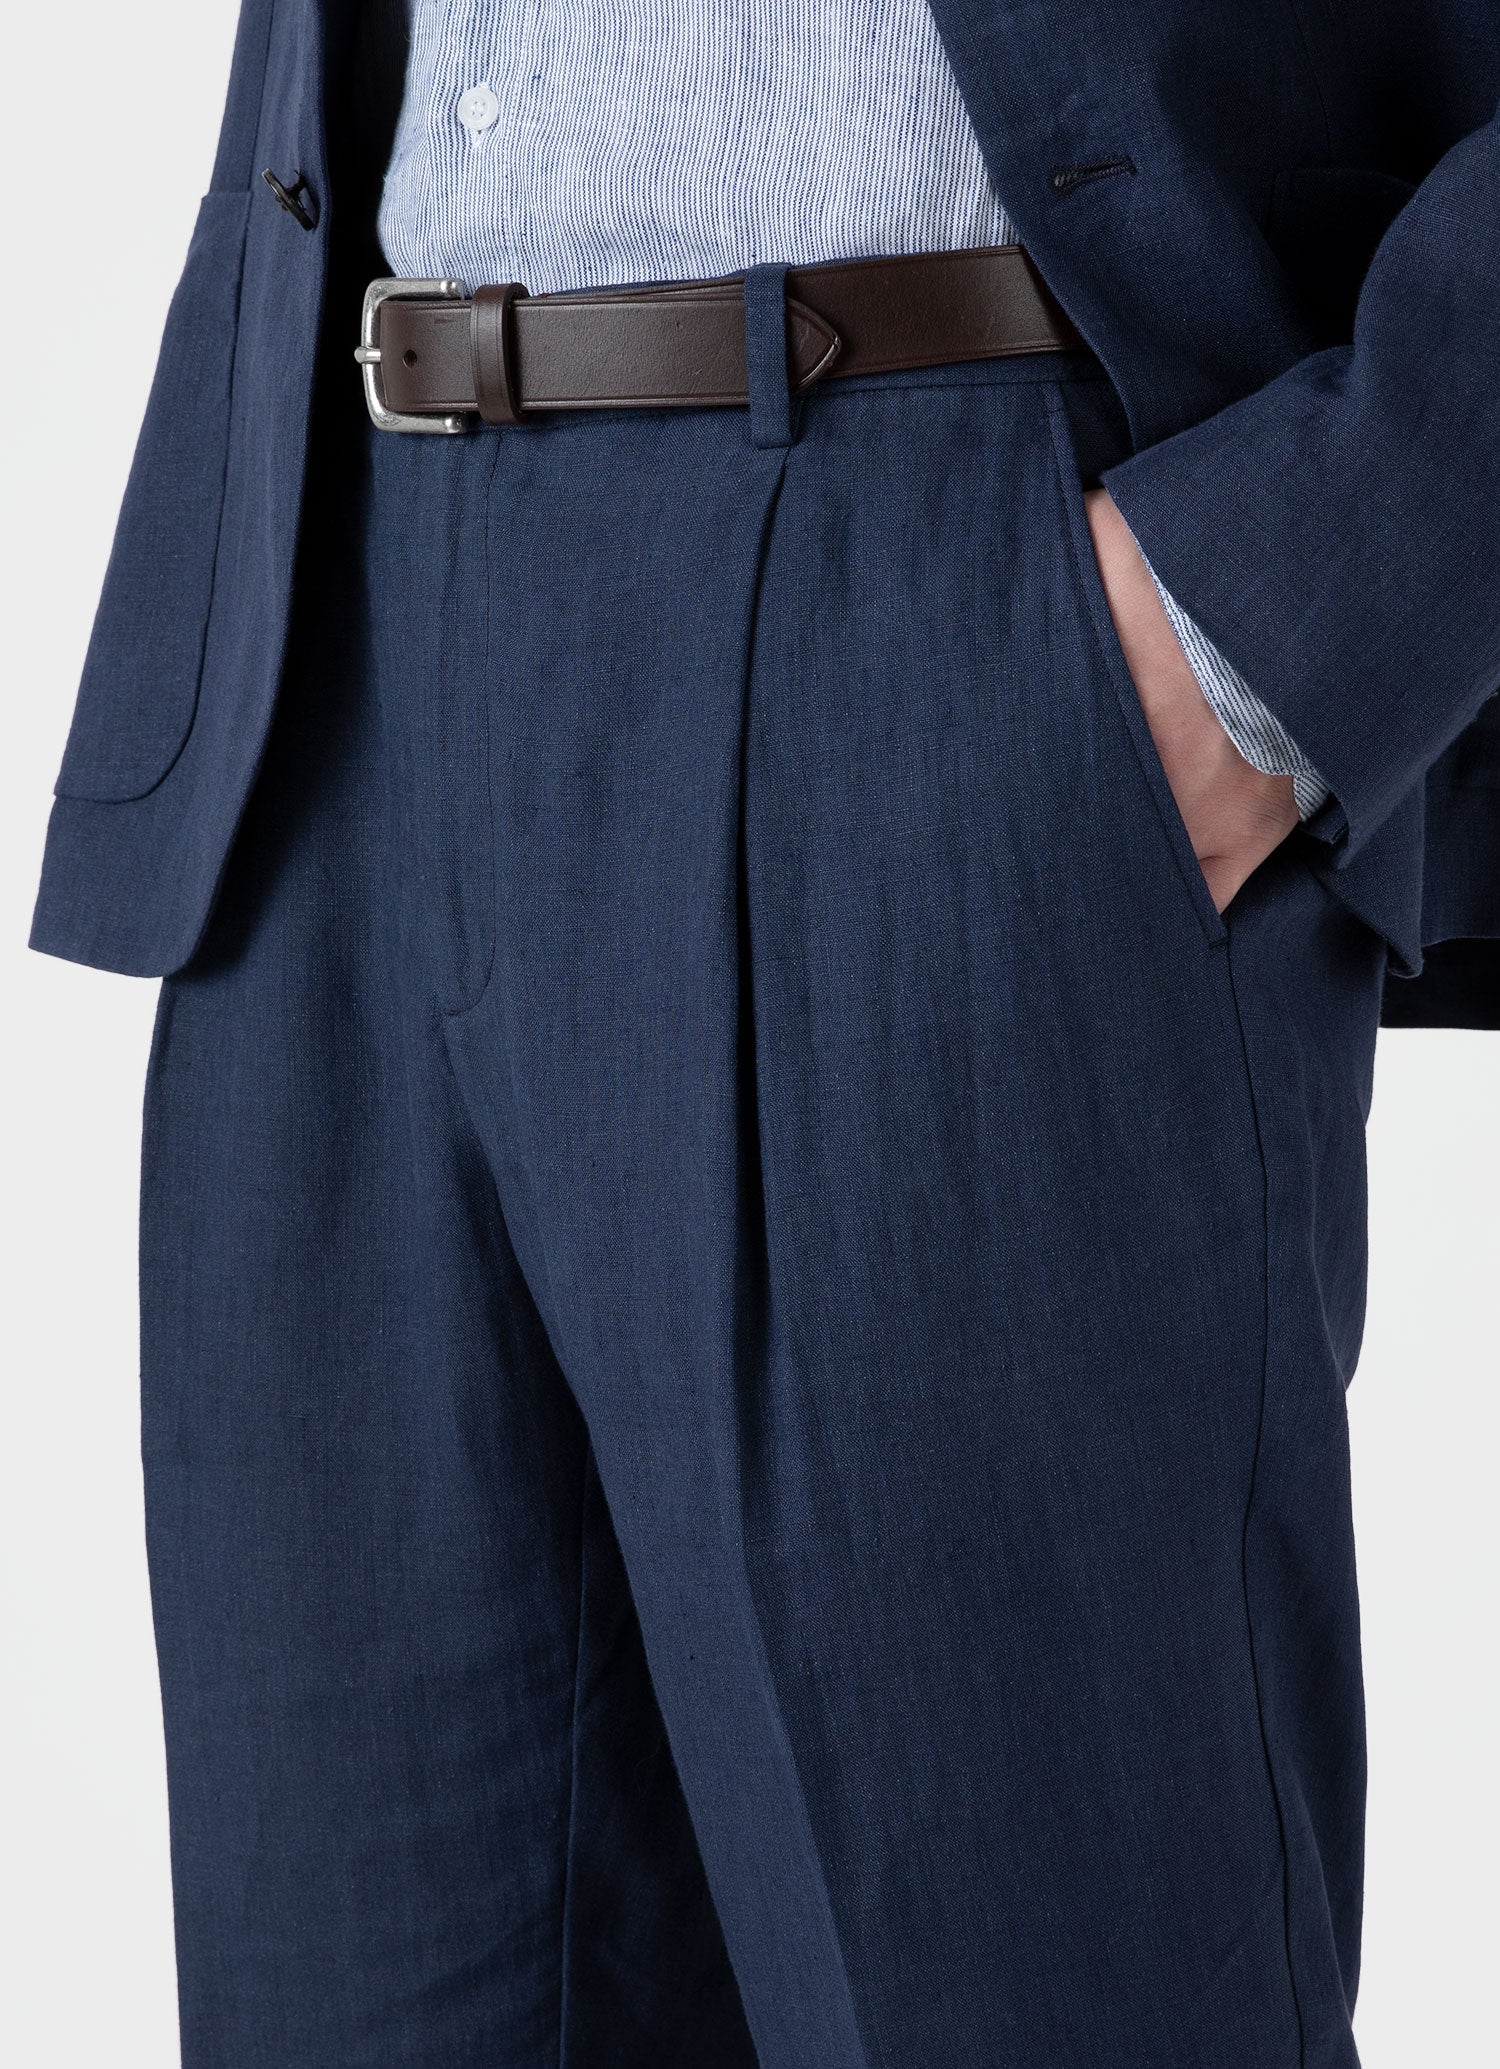 Men's Pleated Linen Trouser in Light Navy